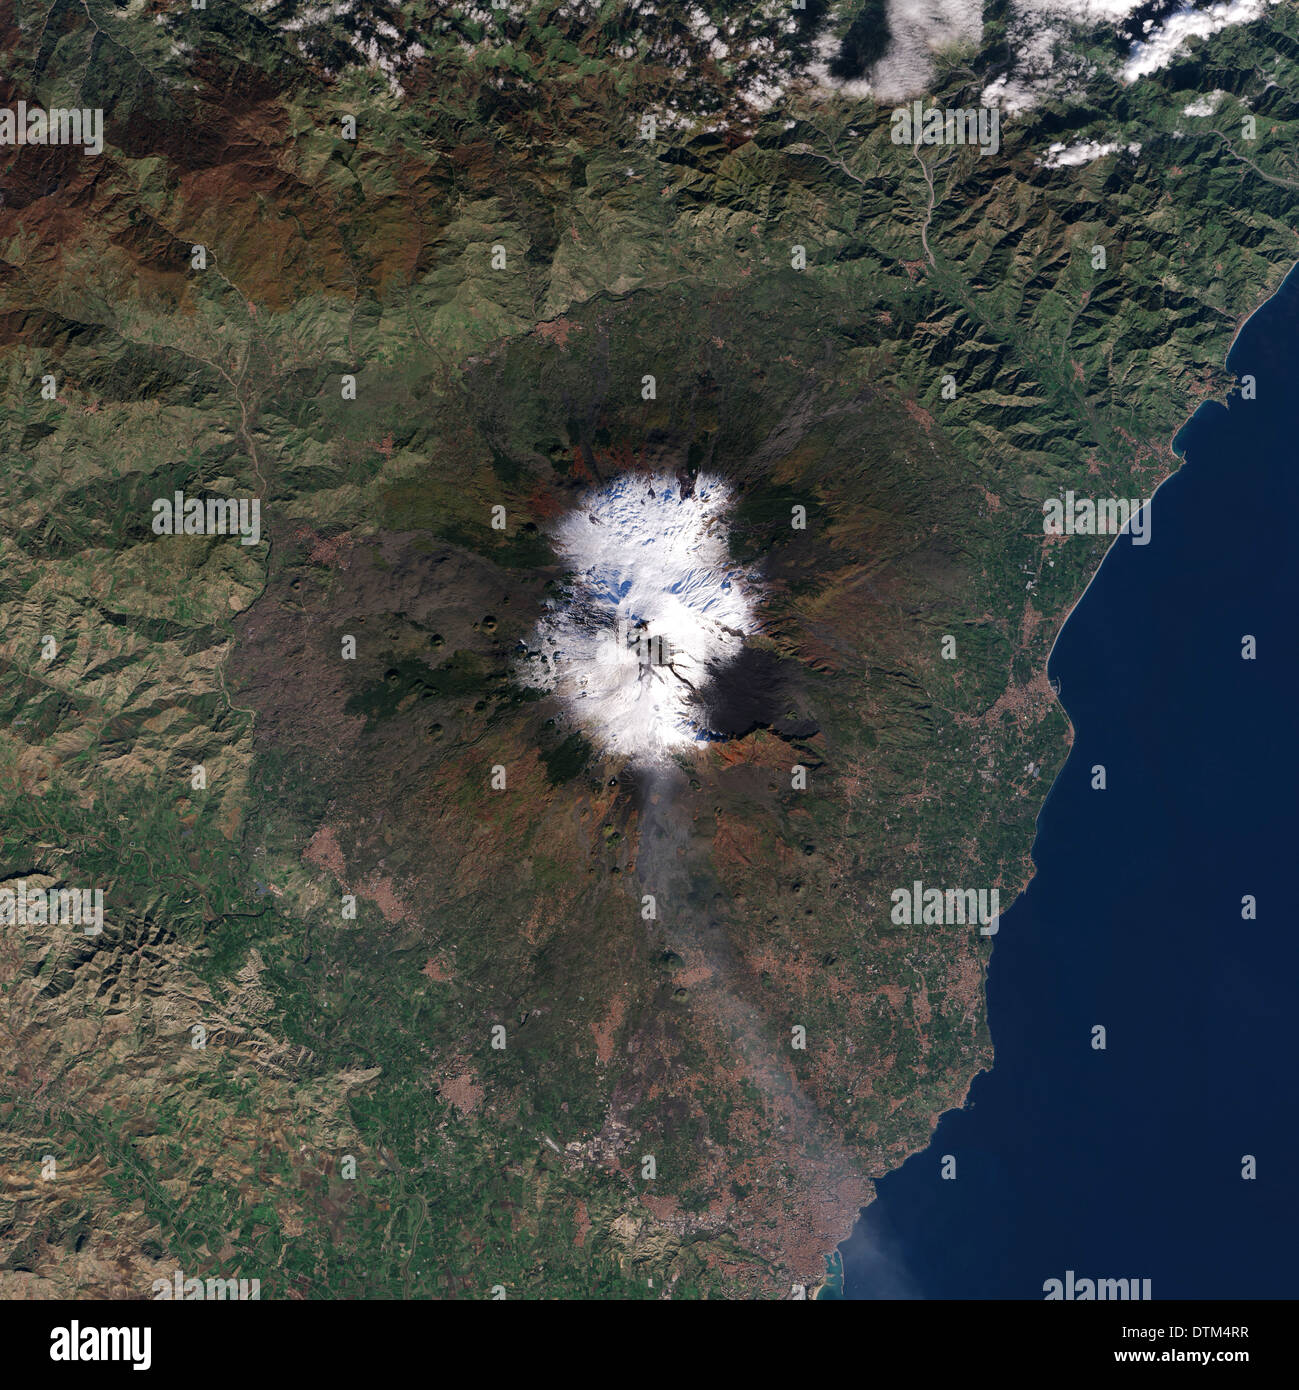 Fiumi di lava nera snake sopra il bianco, pendici innevate del Monte Etna in questo parco naturale di colore di un'immagine satellitare. Dec.13, 2013 Foto Stock